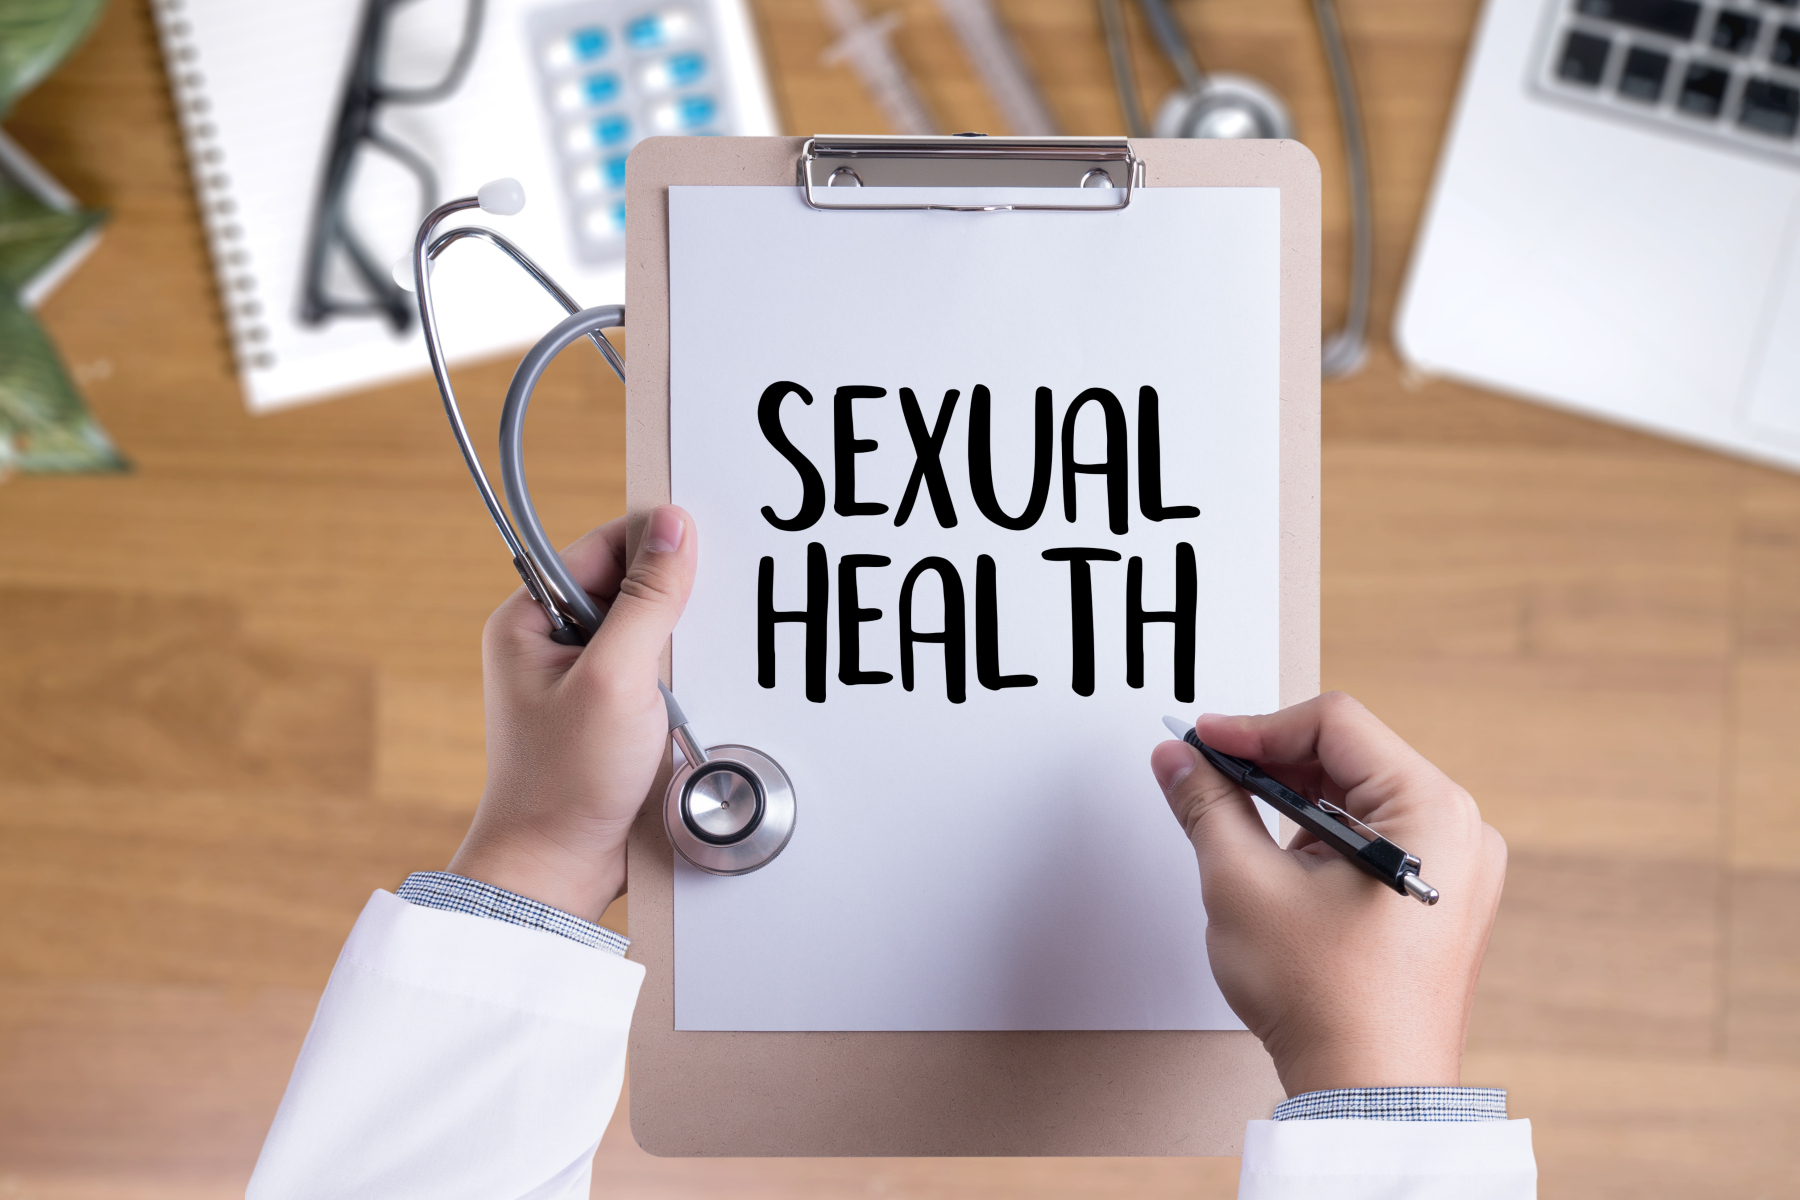 Σεξουαλική επαφή: Πόσο θετικά συμβάλλει η συζήτηση για τη σεξουαλική υγεία;